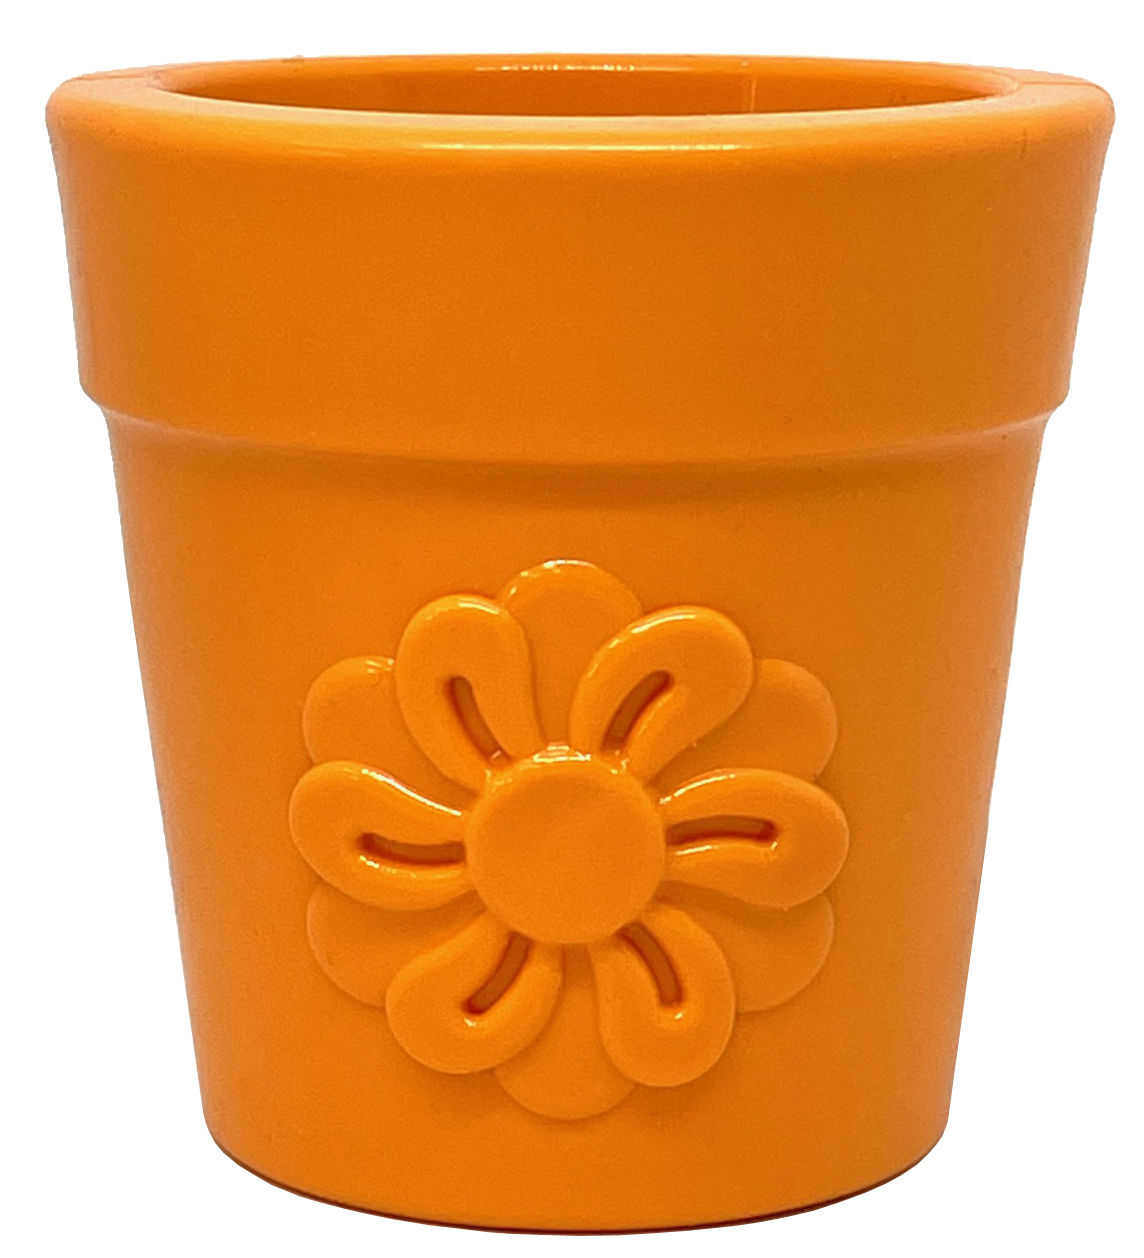 Large Flower Pot Durable Rubber Treat Dispenser & Enrichment Toy